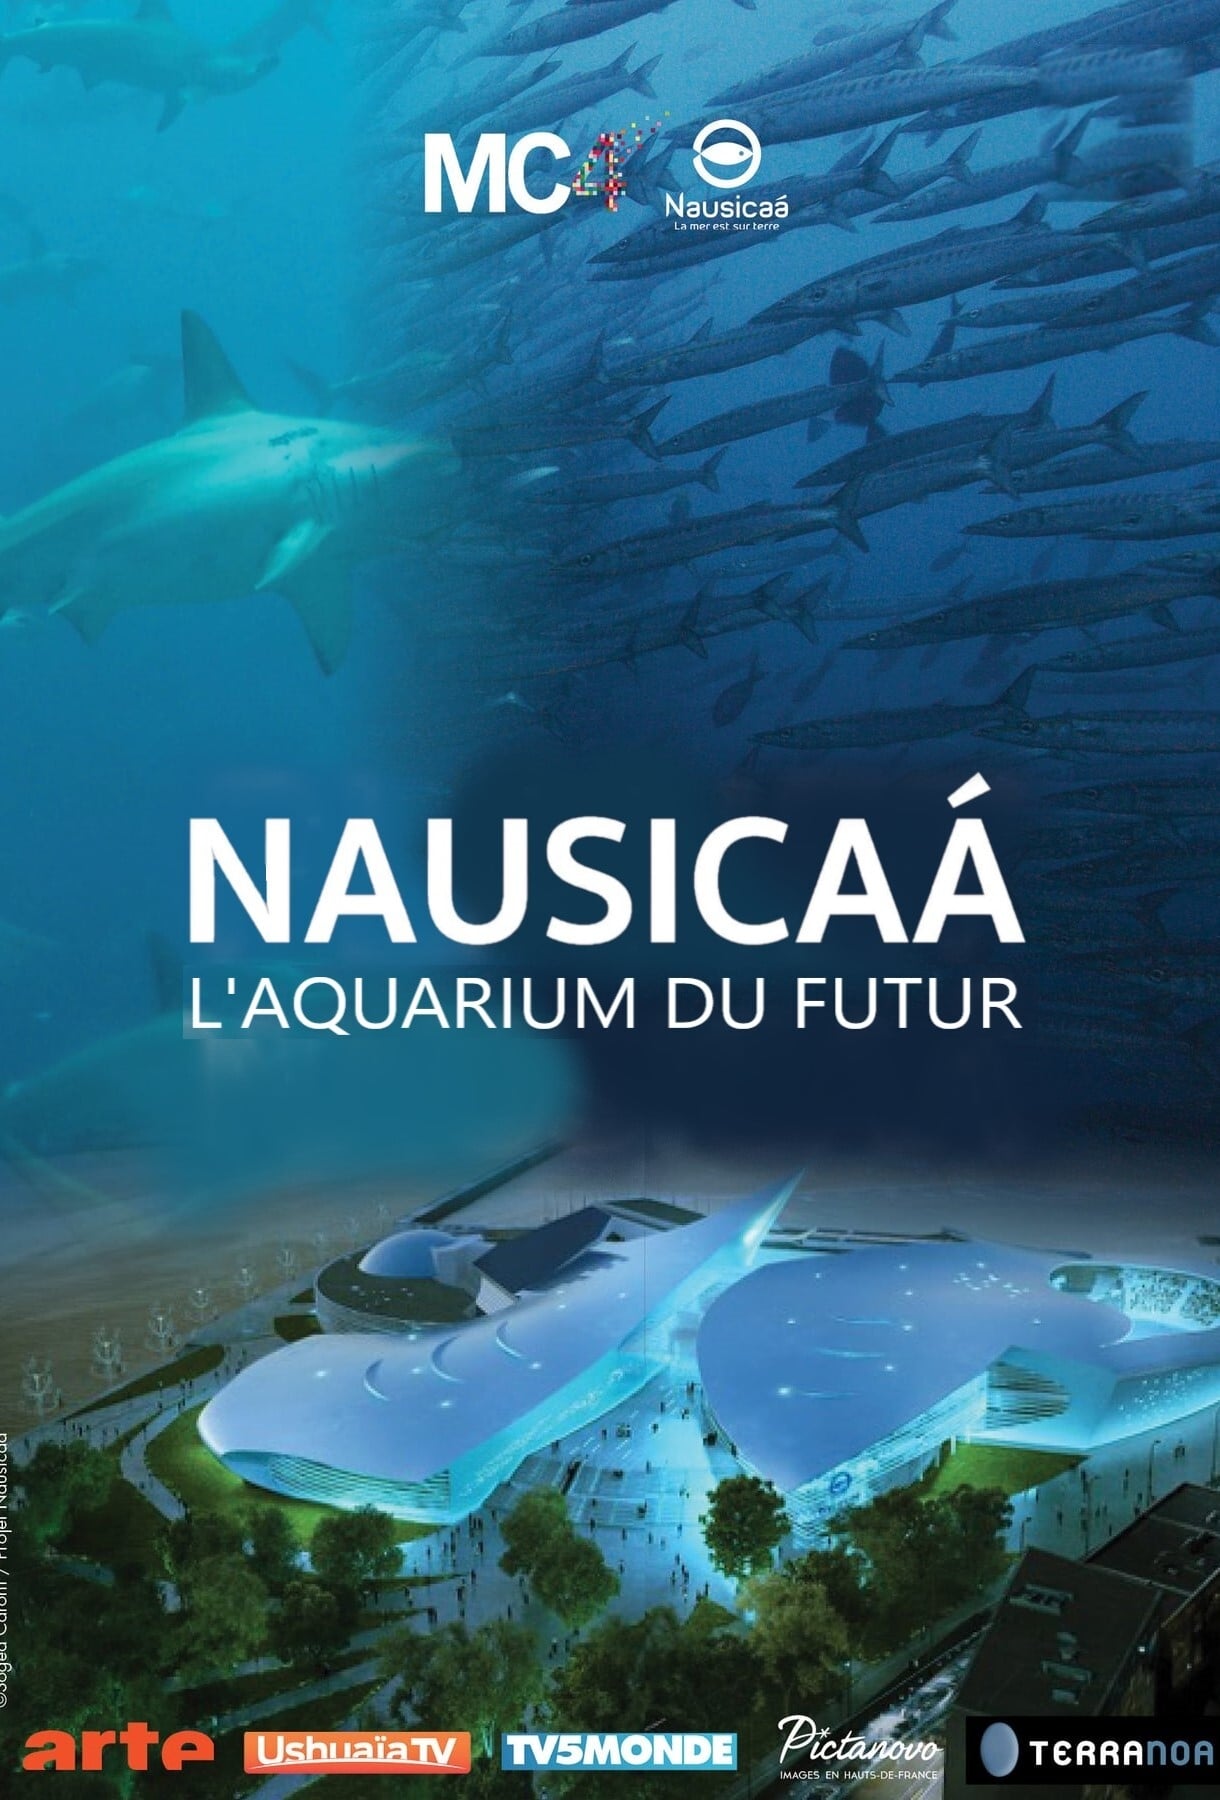 Nausicaá, el acuario del futuro